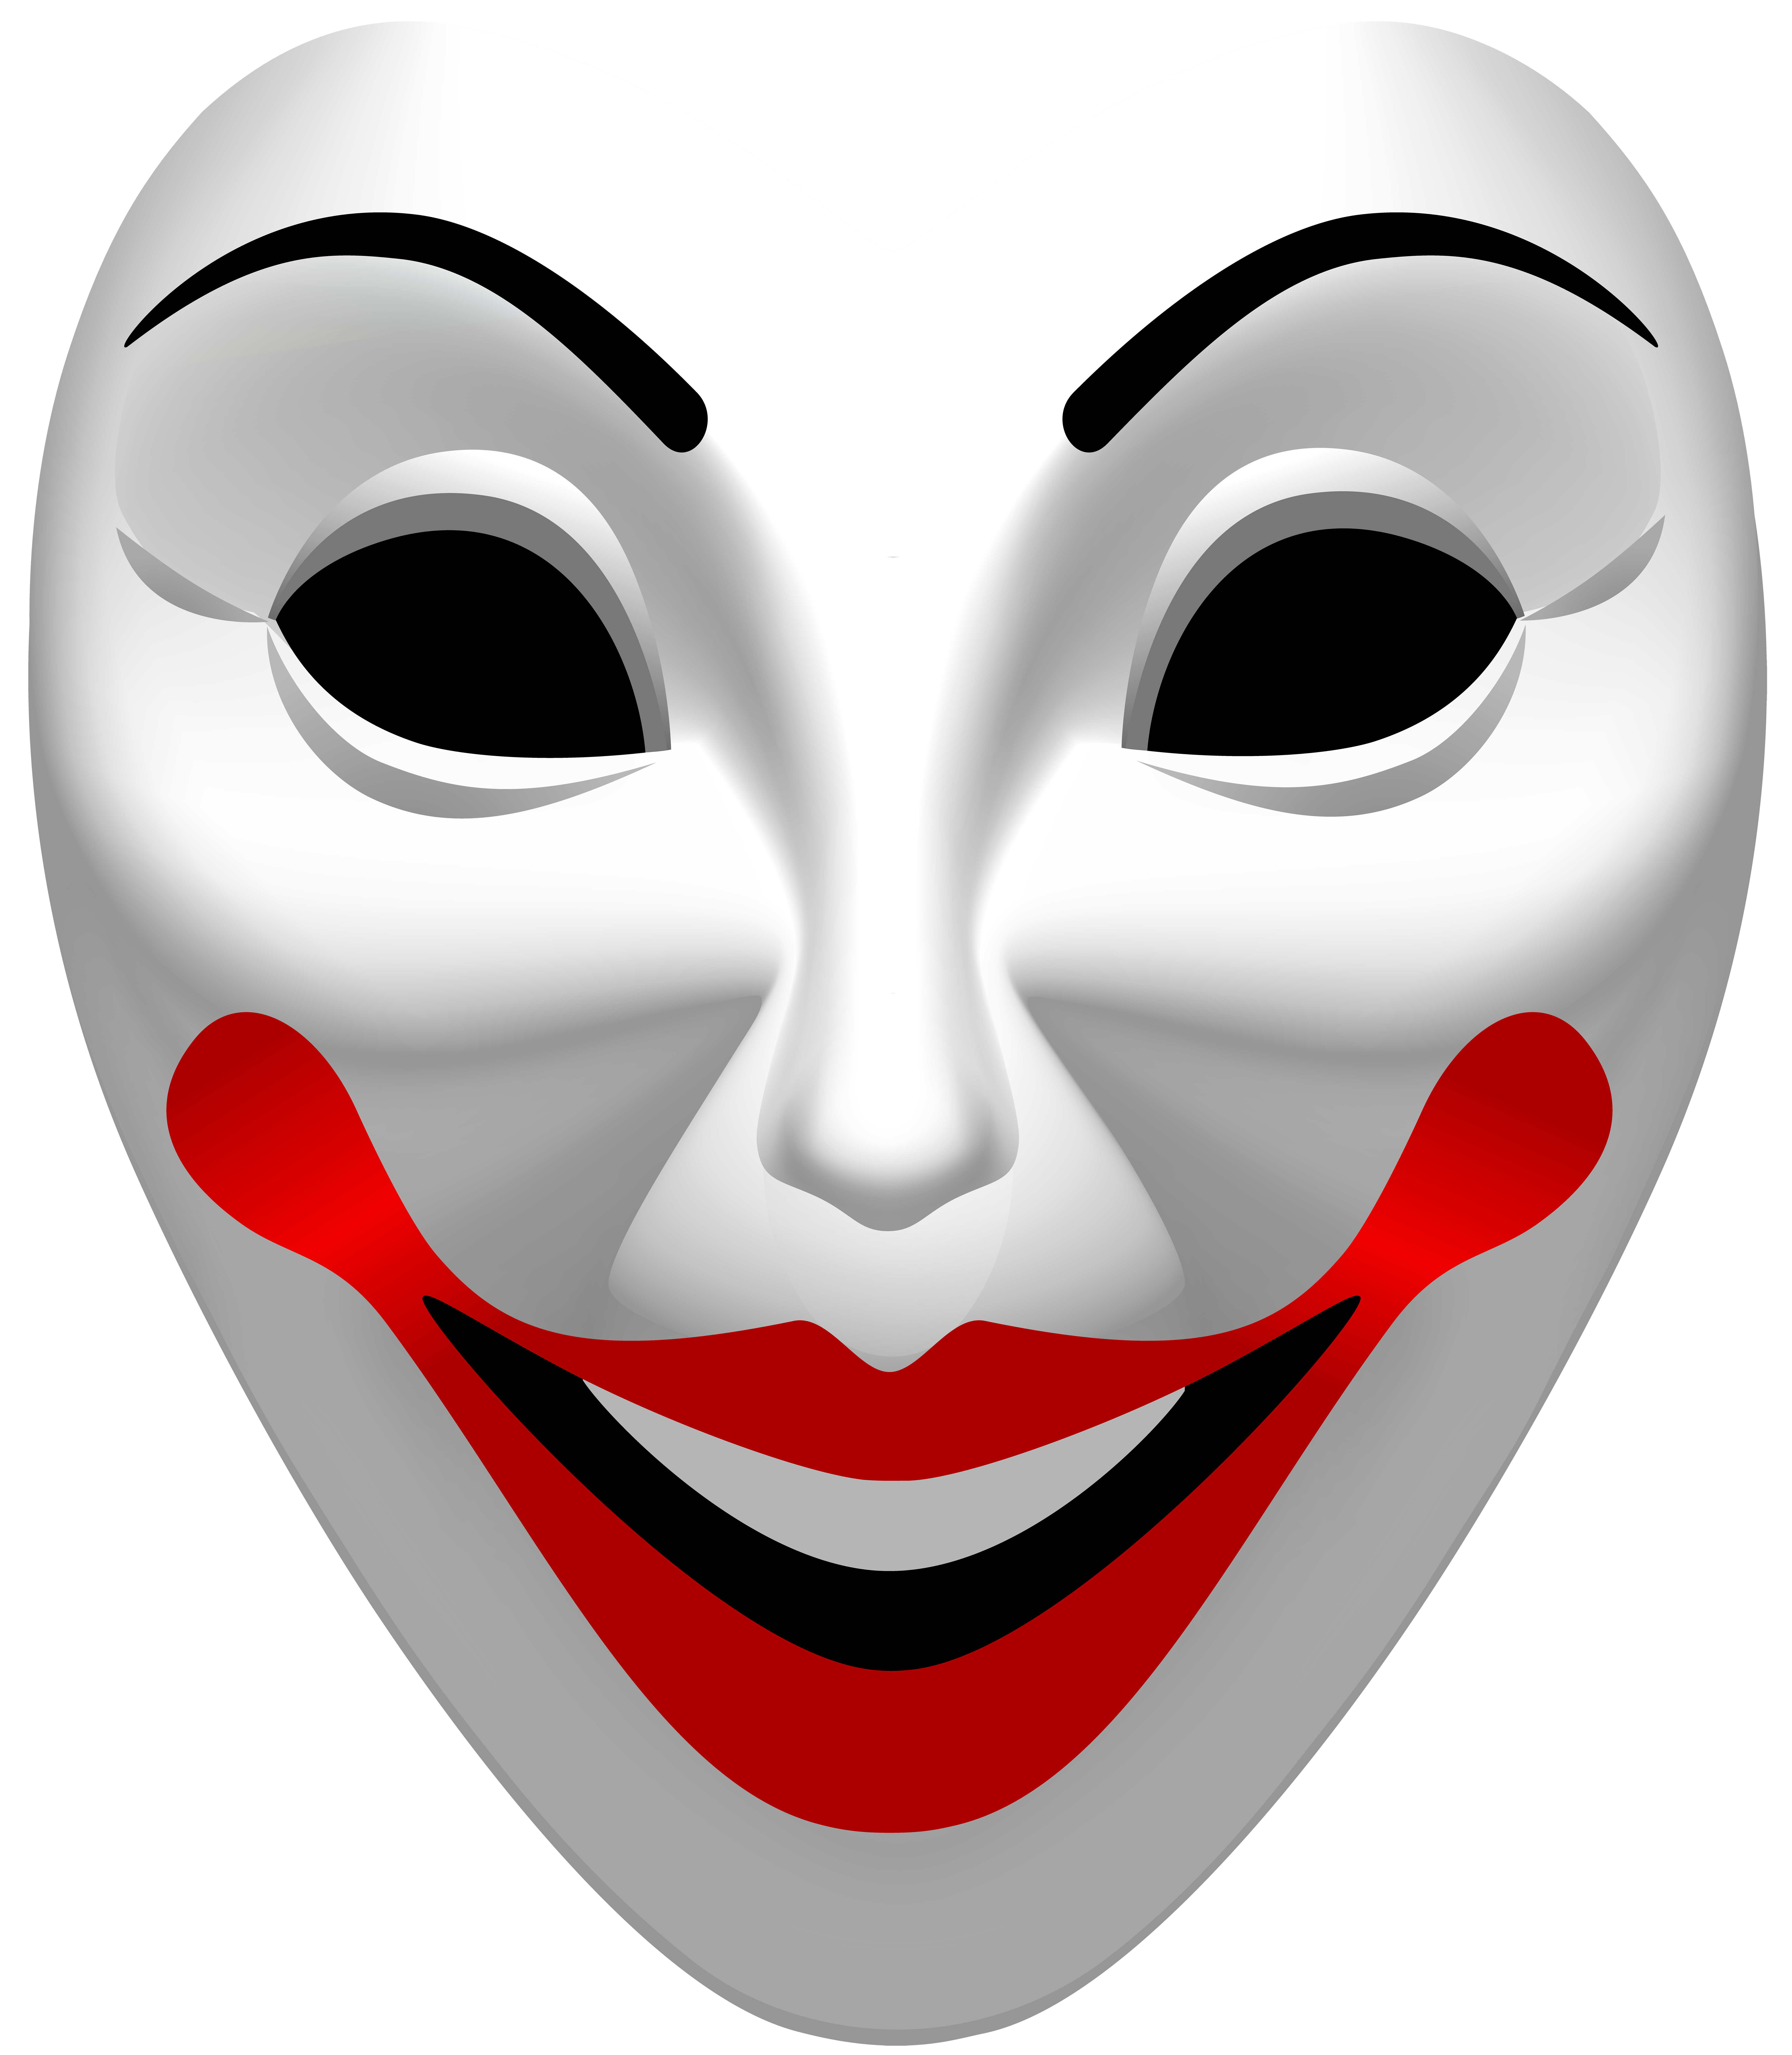 Joker Mask PNG Clip Art